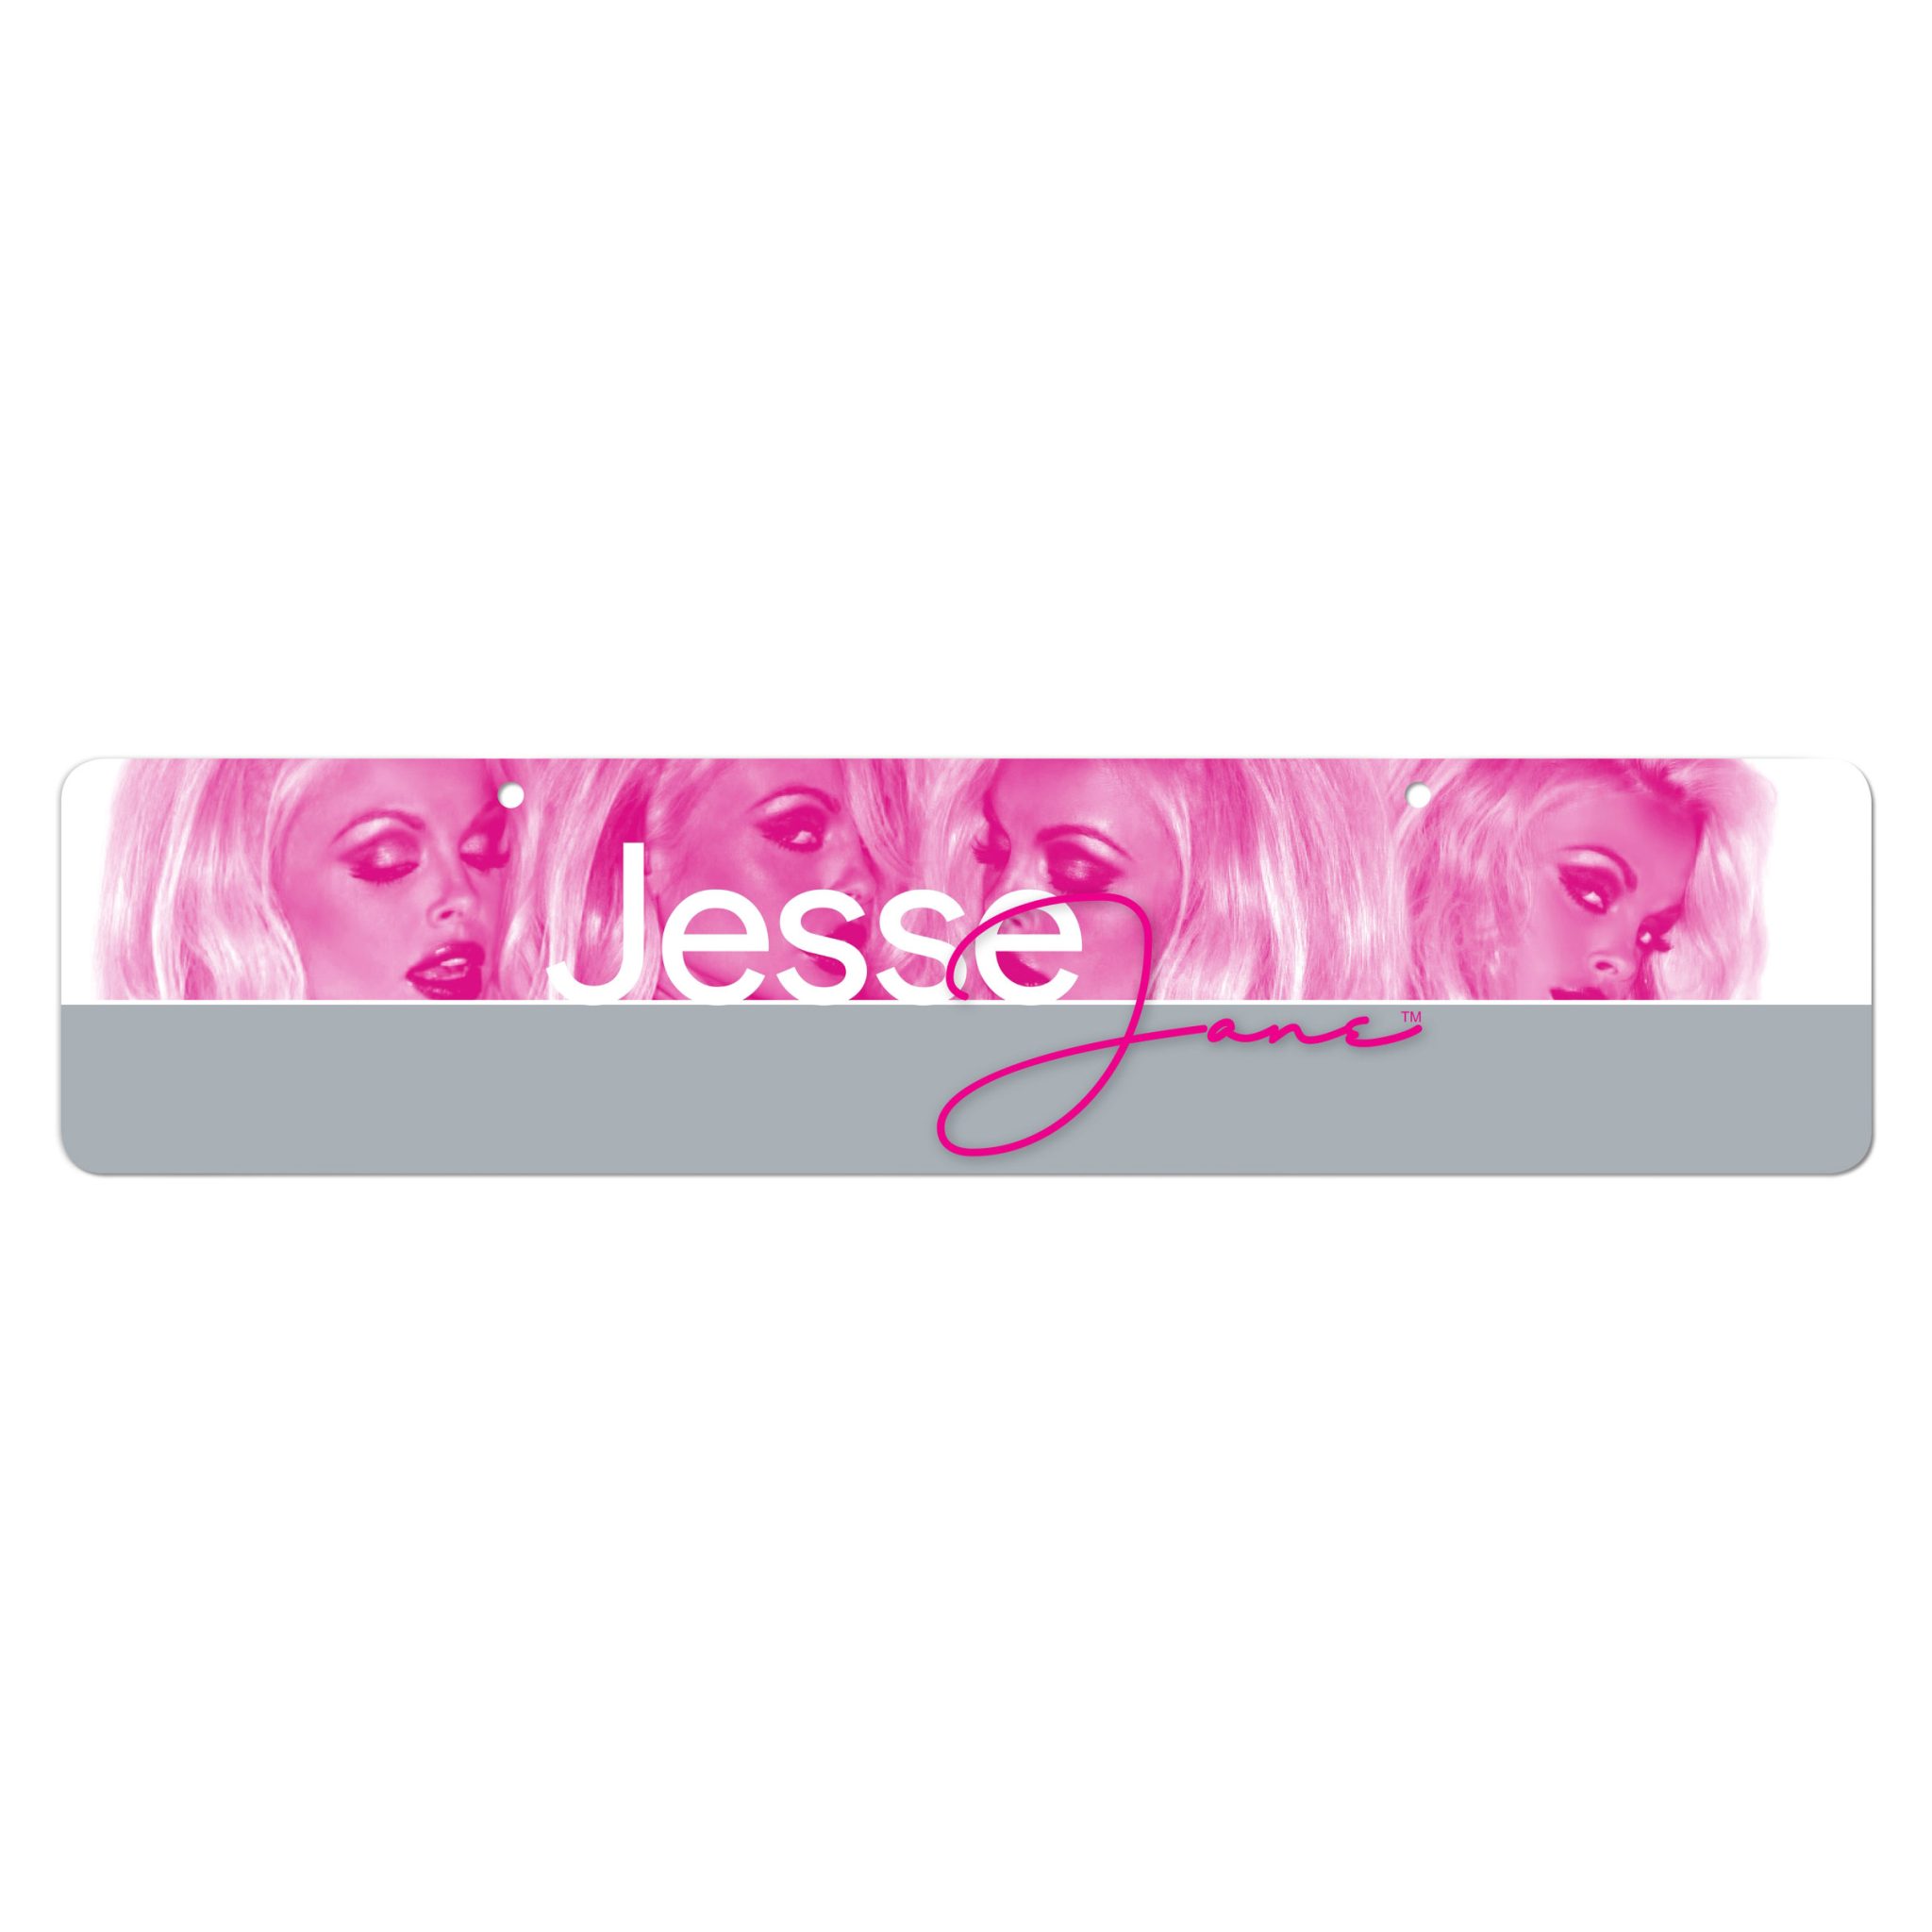 Jesse Jane Display Sign